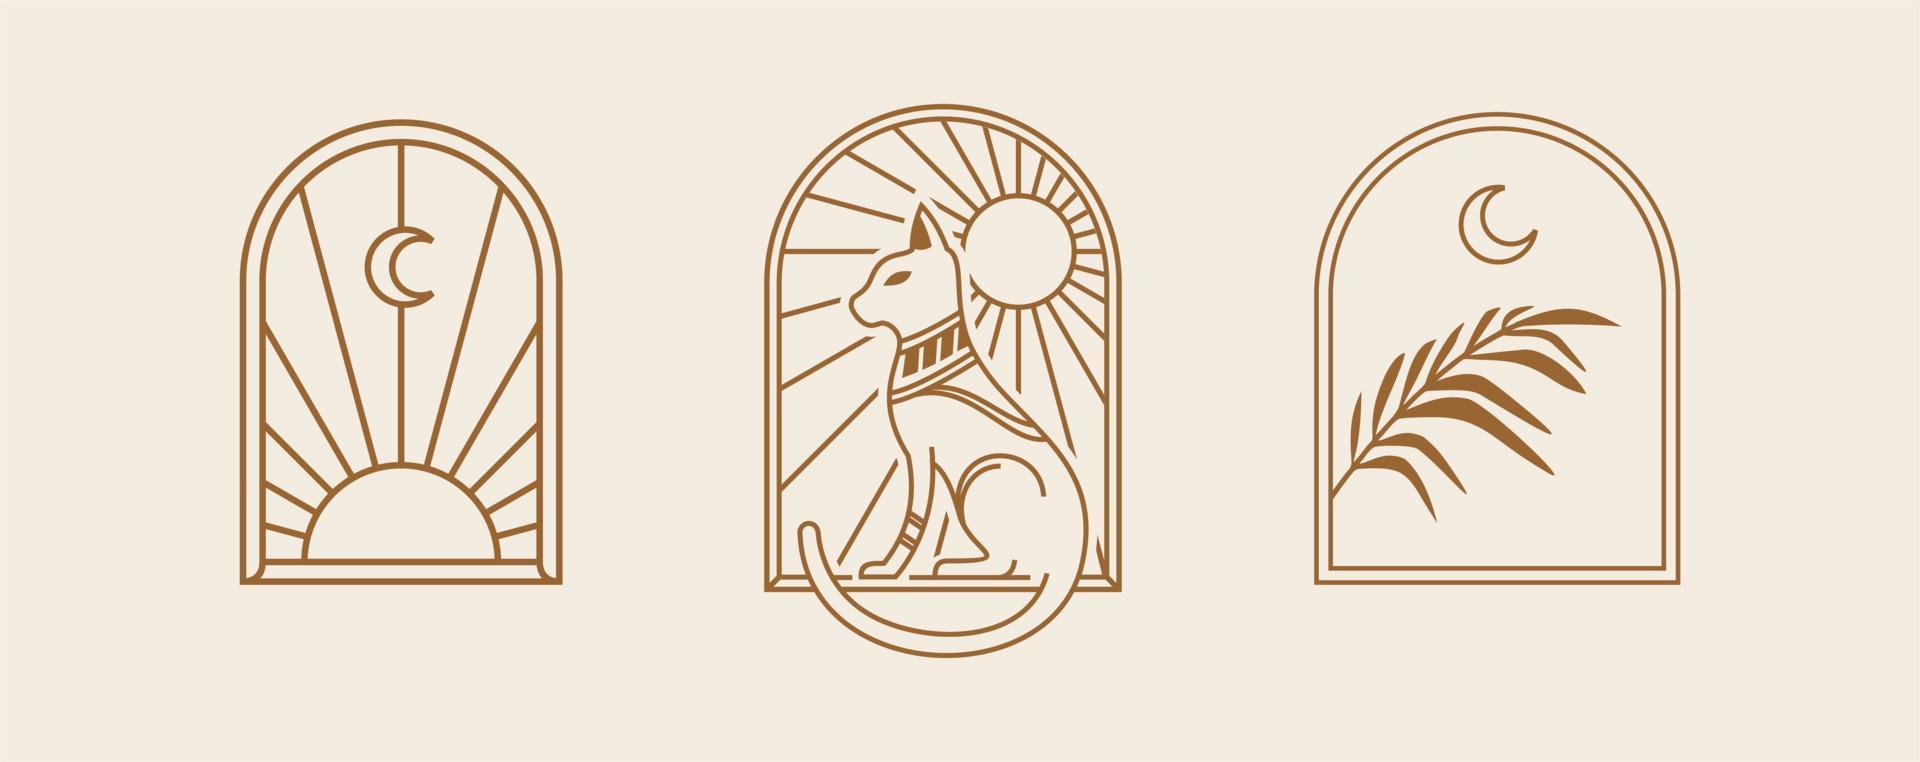 böhmische Linie Logokunst. Symbol und Symbole mit Katze, Sonne und Mond. Geometrische abstrakte Gestaltungselemente des Bogenfensterdesigns für Dekorationsvektorillustration vektor